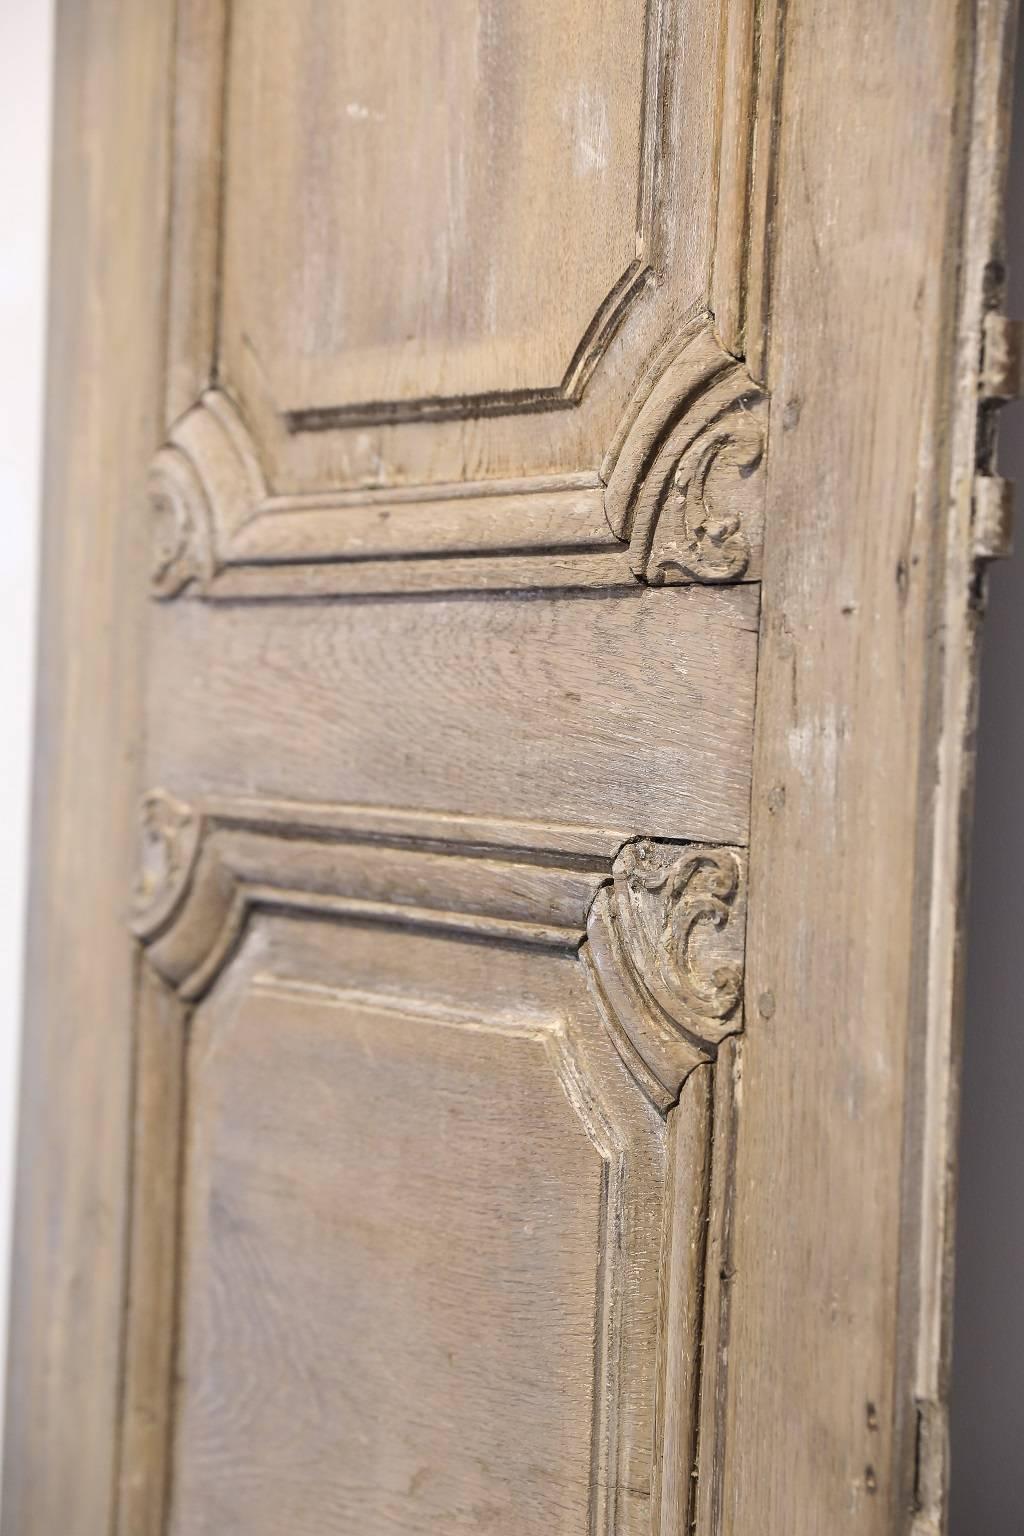 18th Century Italian Doors (Holz)